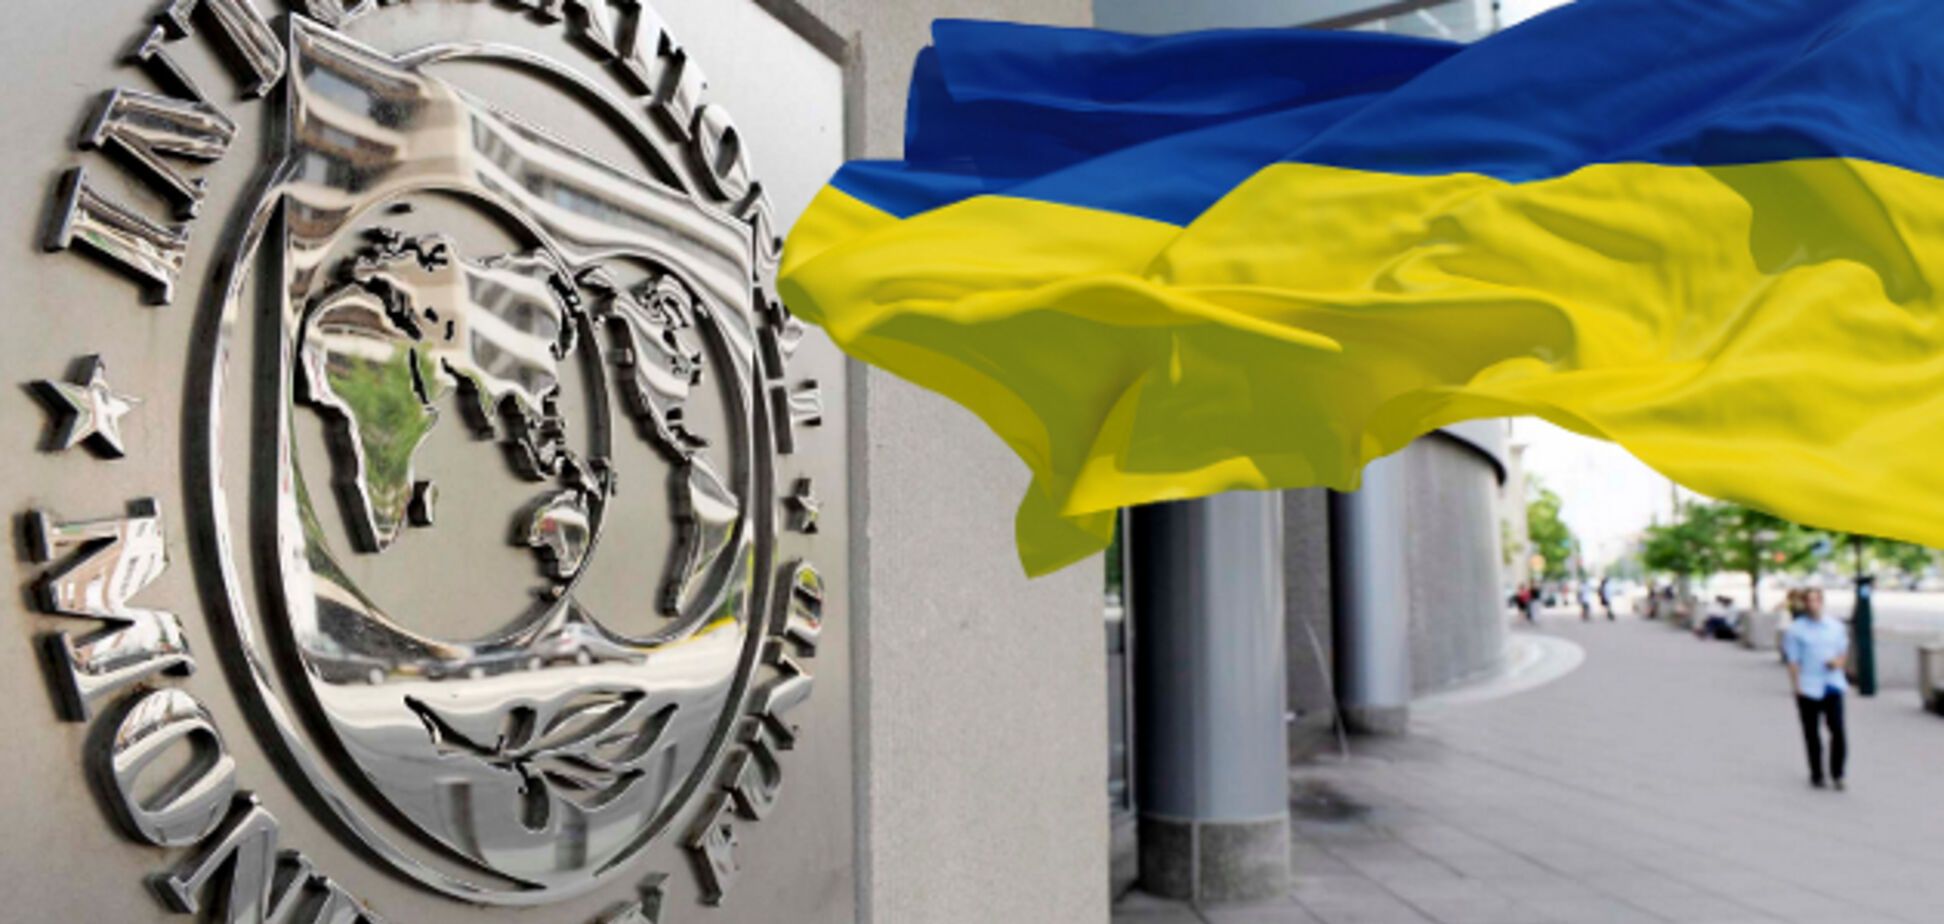 Последний платеж: стала известна сумма, перечисленная Украиной МВФ в 2017 году